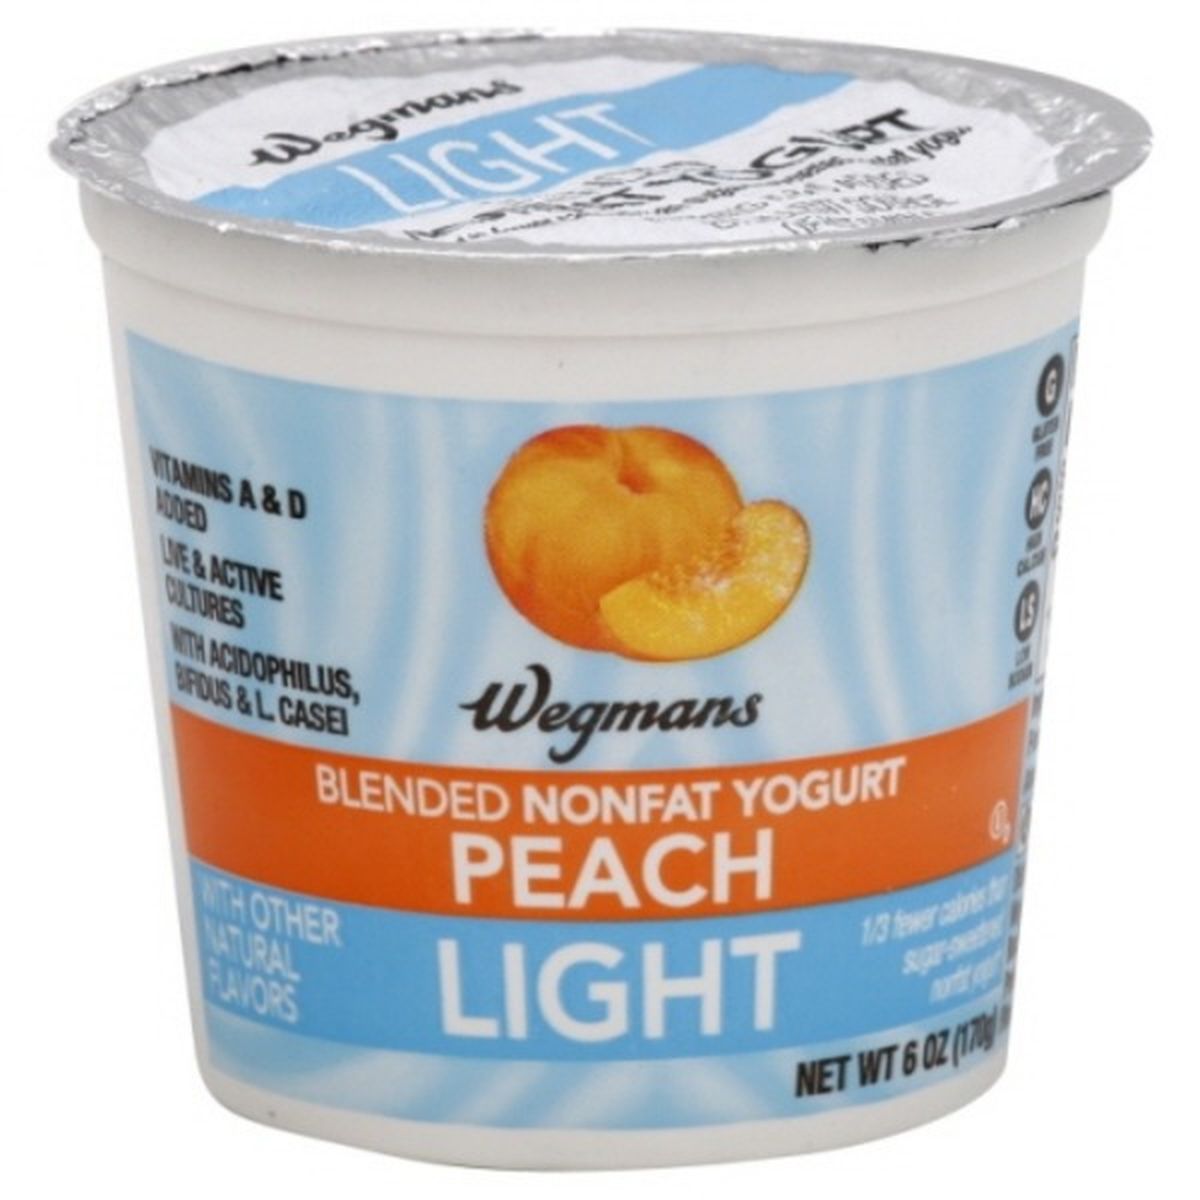 Calories in Wegmans Light Blended Peach Nonfat Yogurt